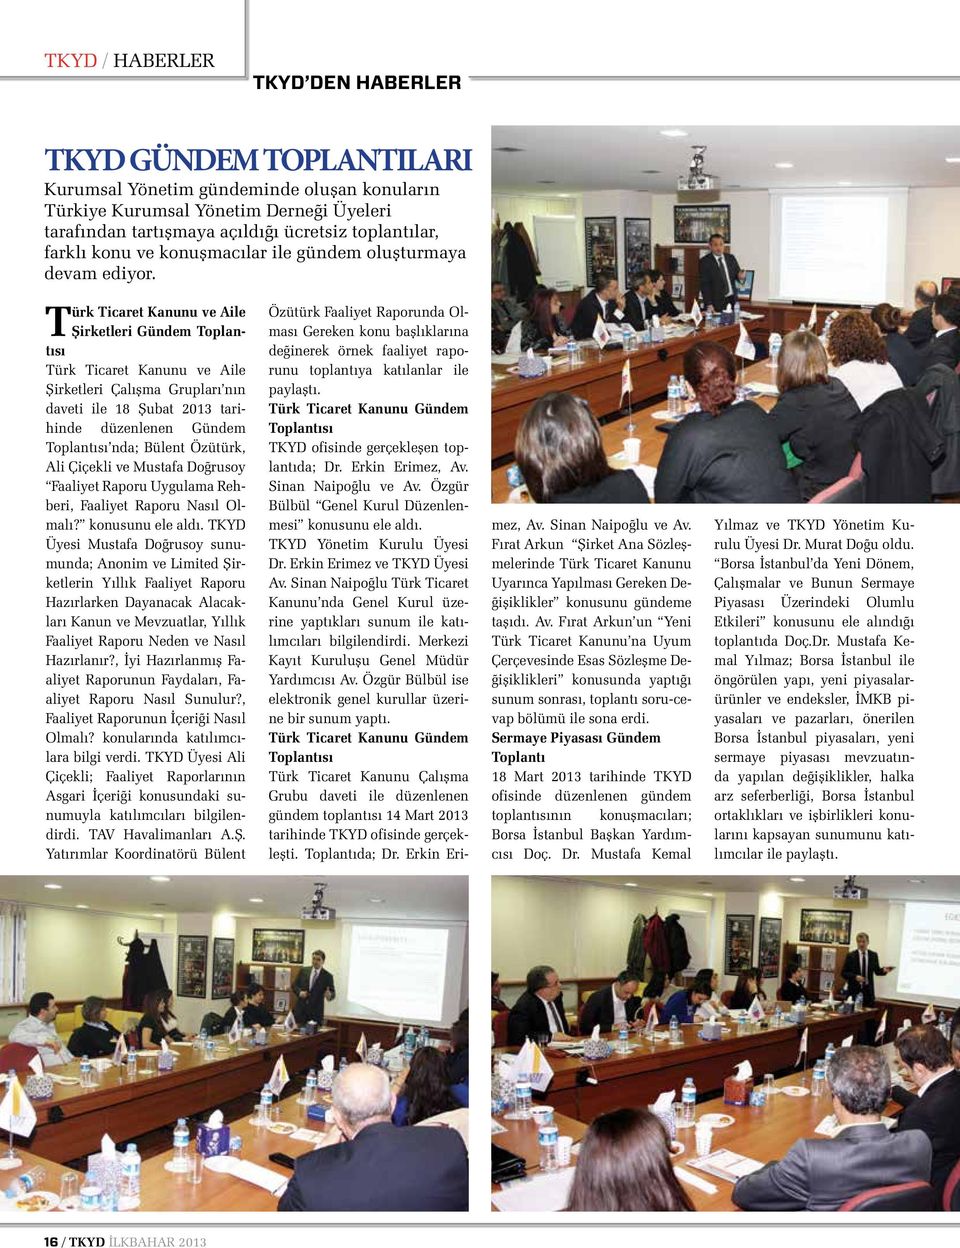 Türk Ticaret Kanunu ve Aile Şirketleri Gündem Toplantısı Türk Ticaret Kanunu ve Aile Şirketleri Çalışma Grupları nın daveti ile 18 Şubat 2013 tarihinde düzenlenen Gündem Toplantısı nda; Bülent